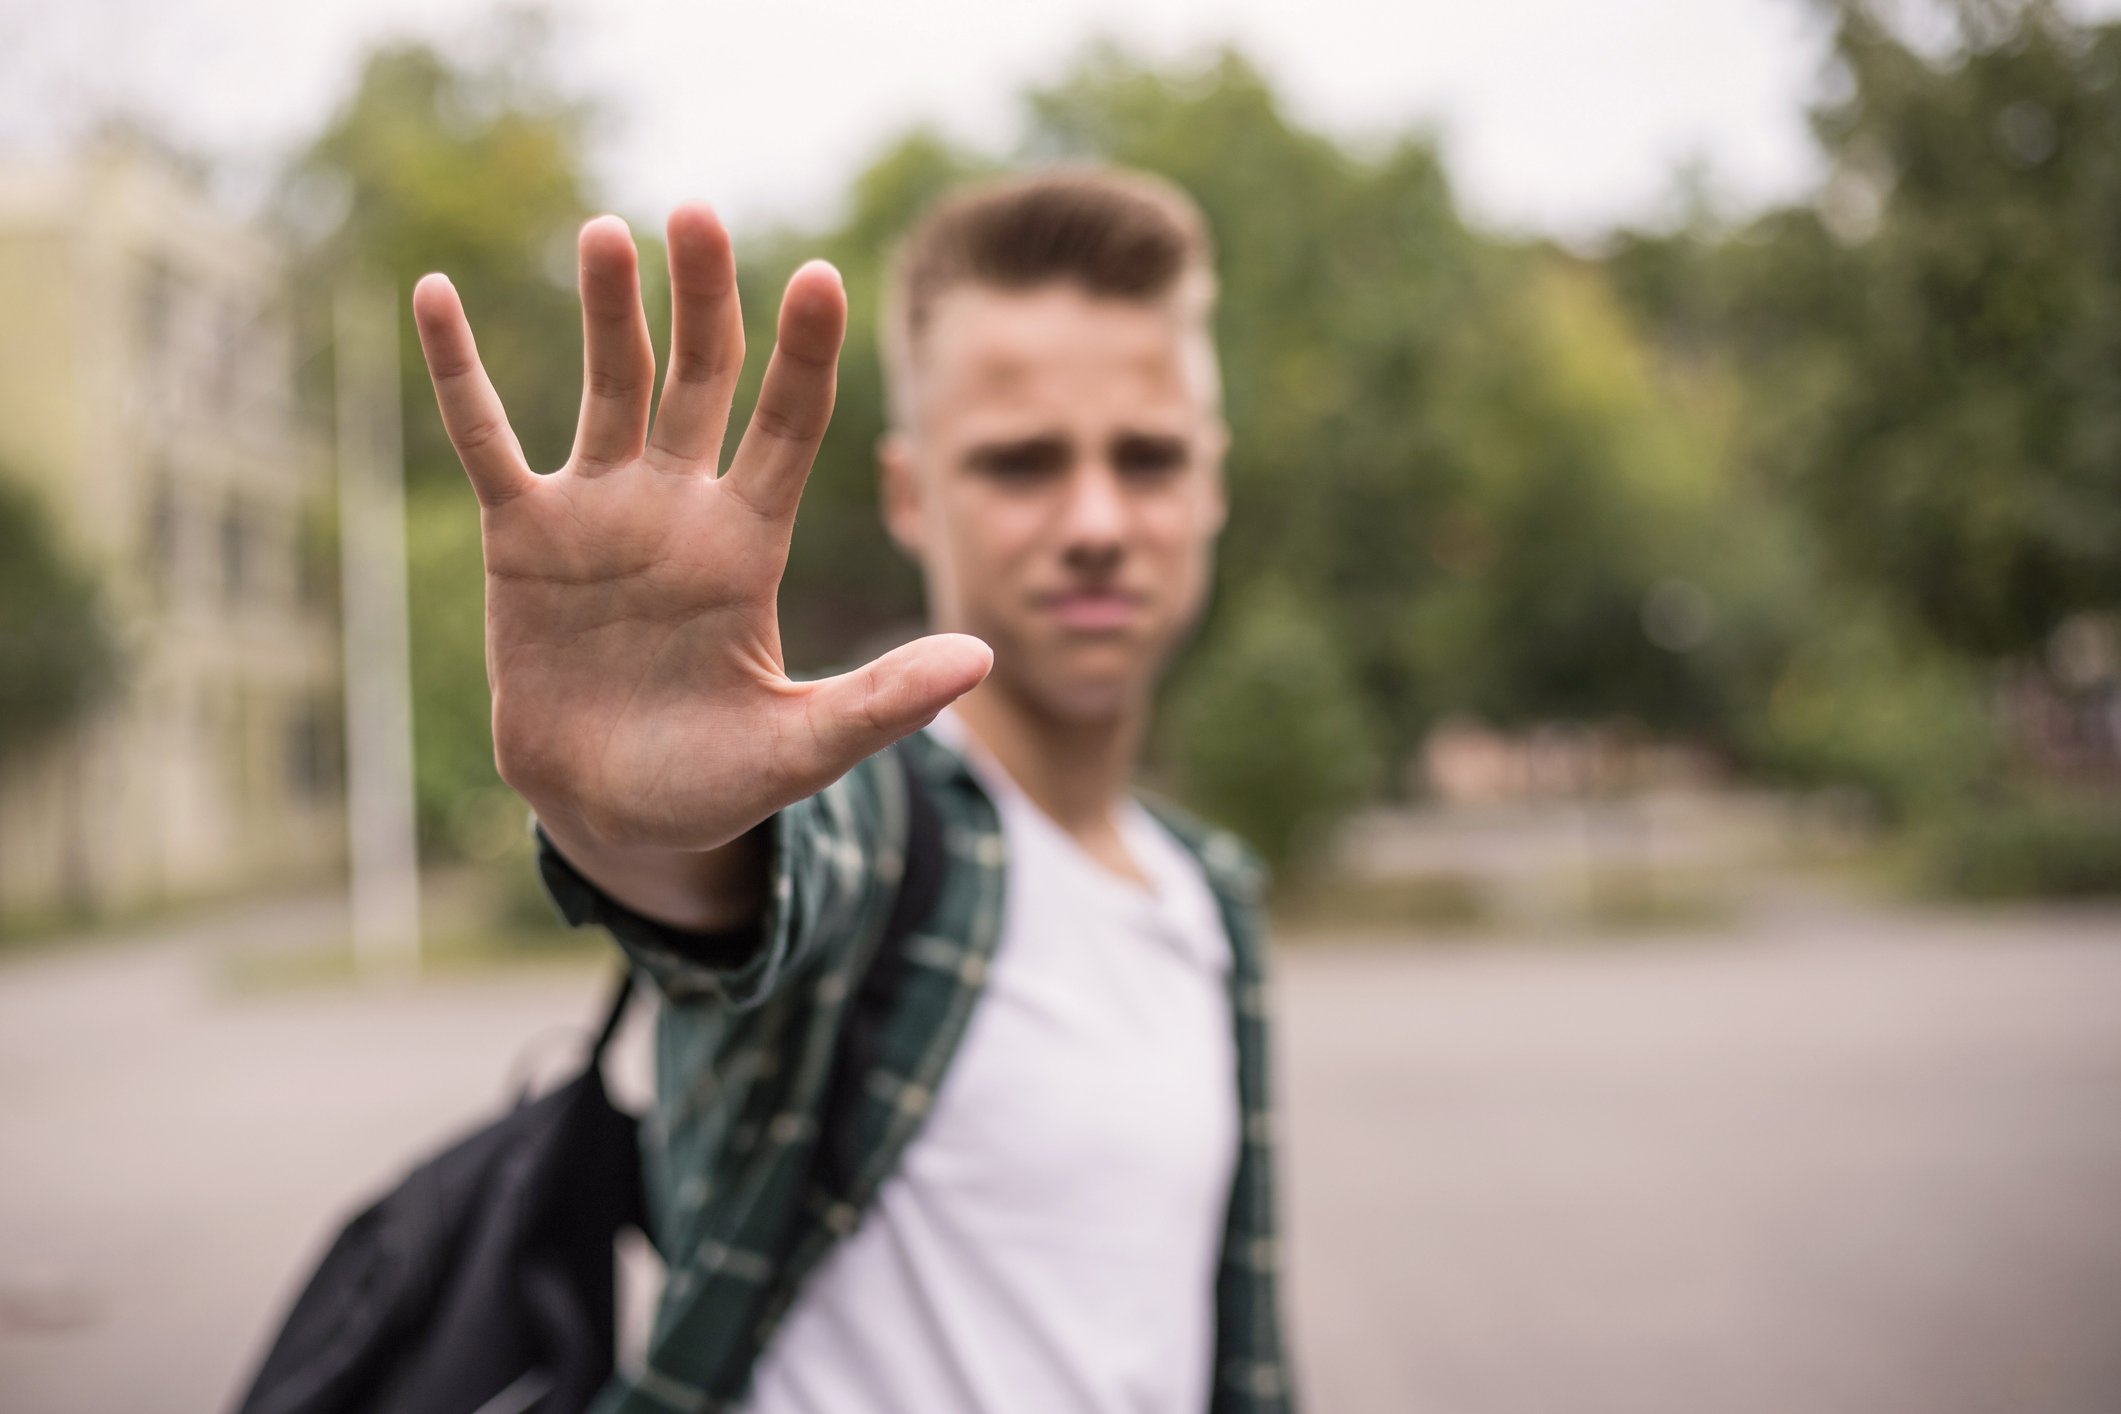 Frustrierter Teenager zeigt seine Hand | Quelle: Getty Images